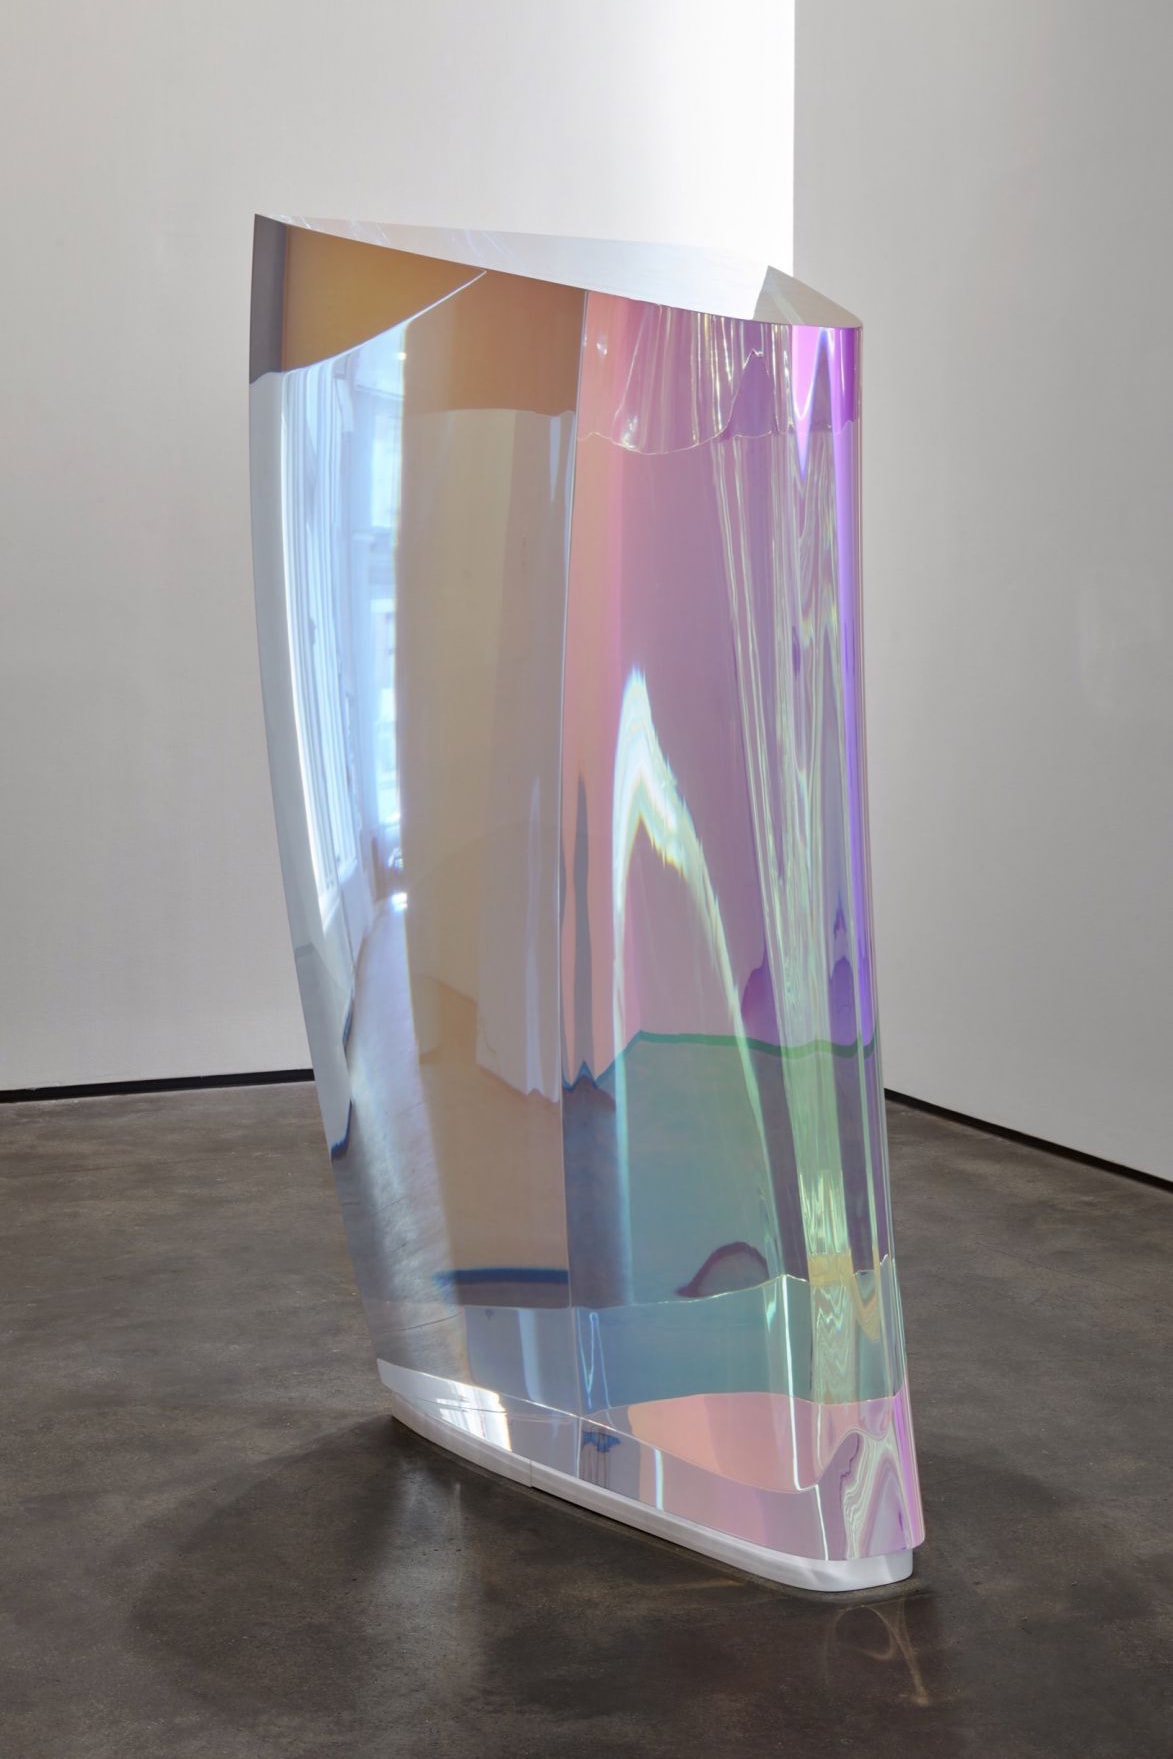 Mariko Mori Sean Kelly Gallery New York Invisible Dimension sculpture March 22 april 28 2018 exhibition seven